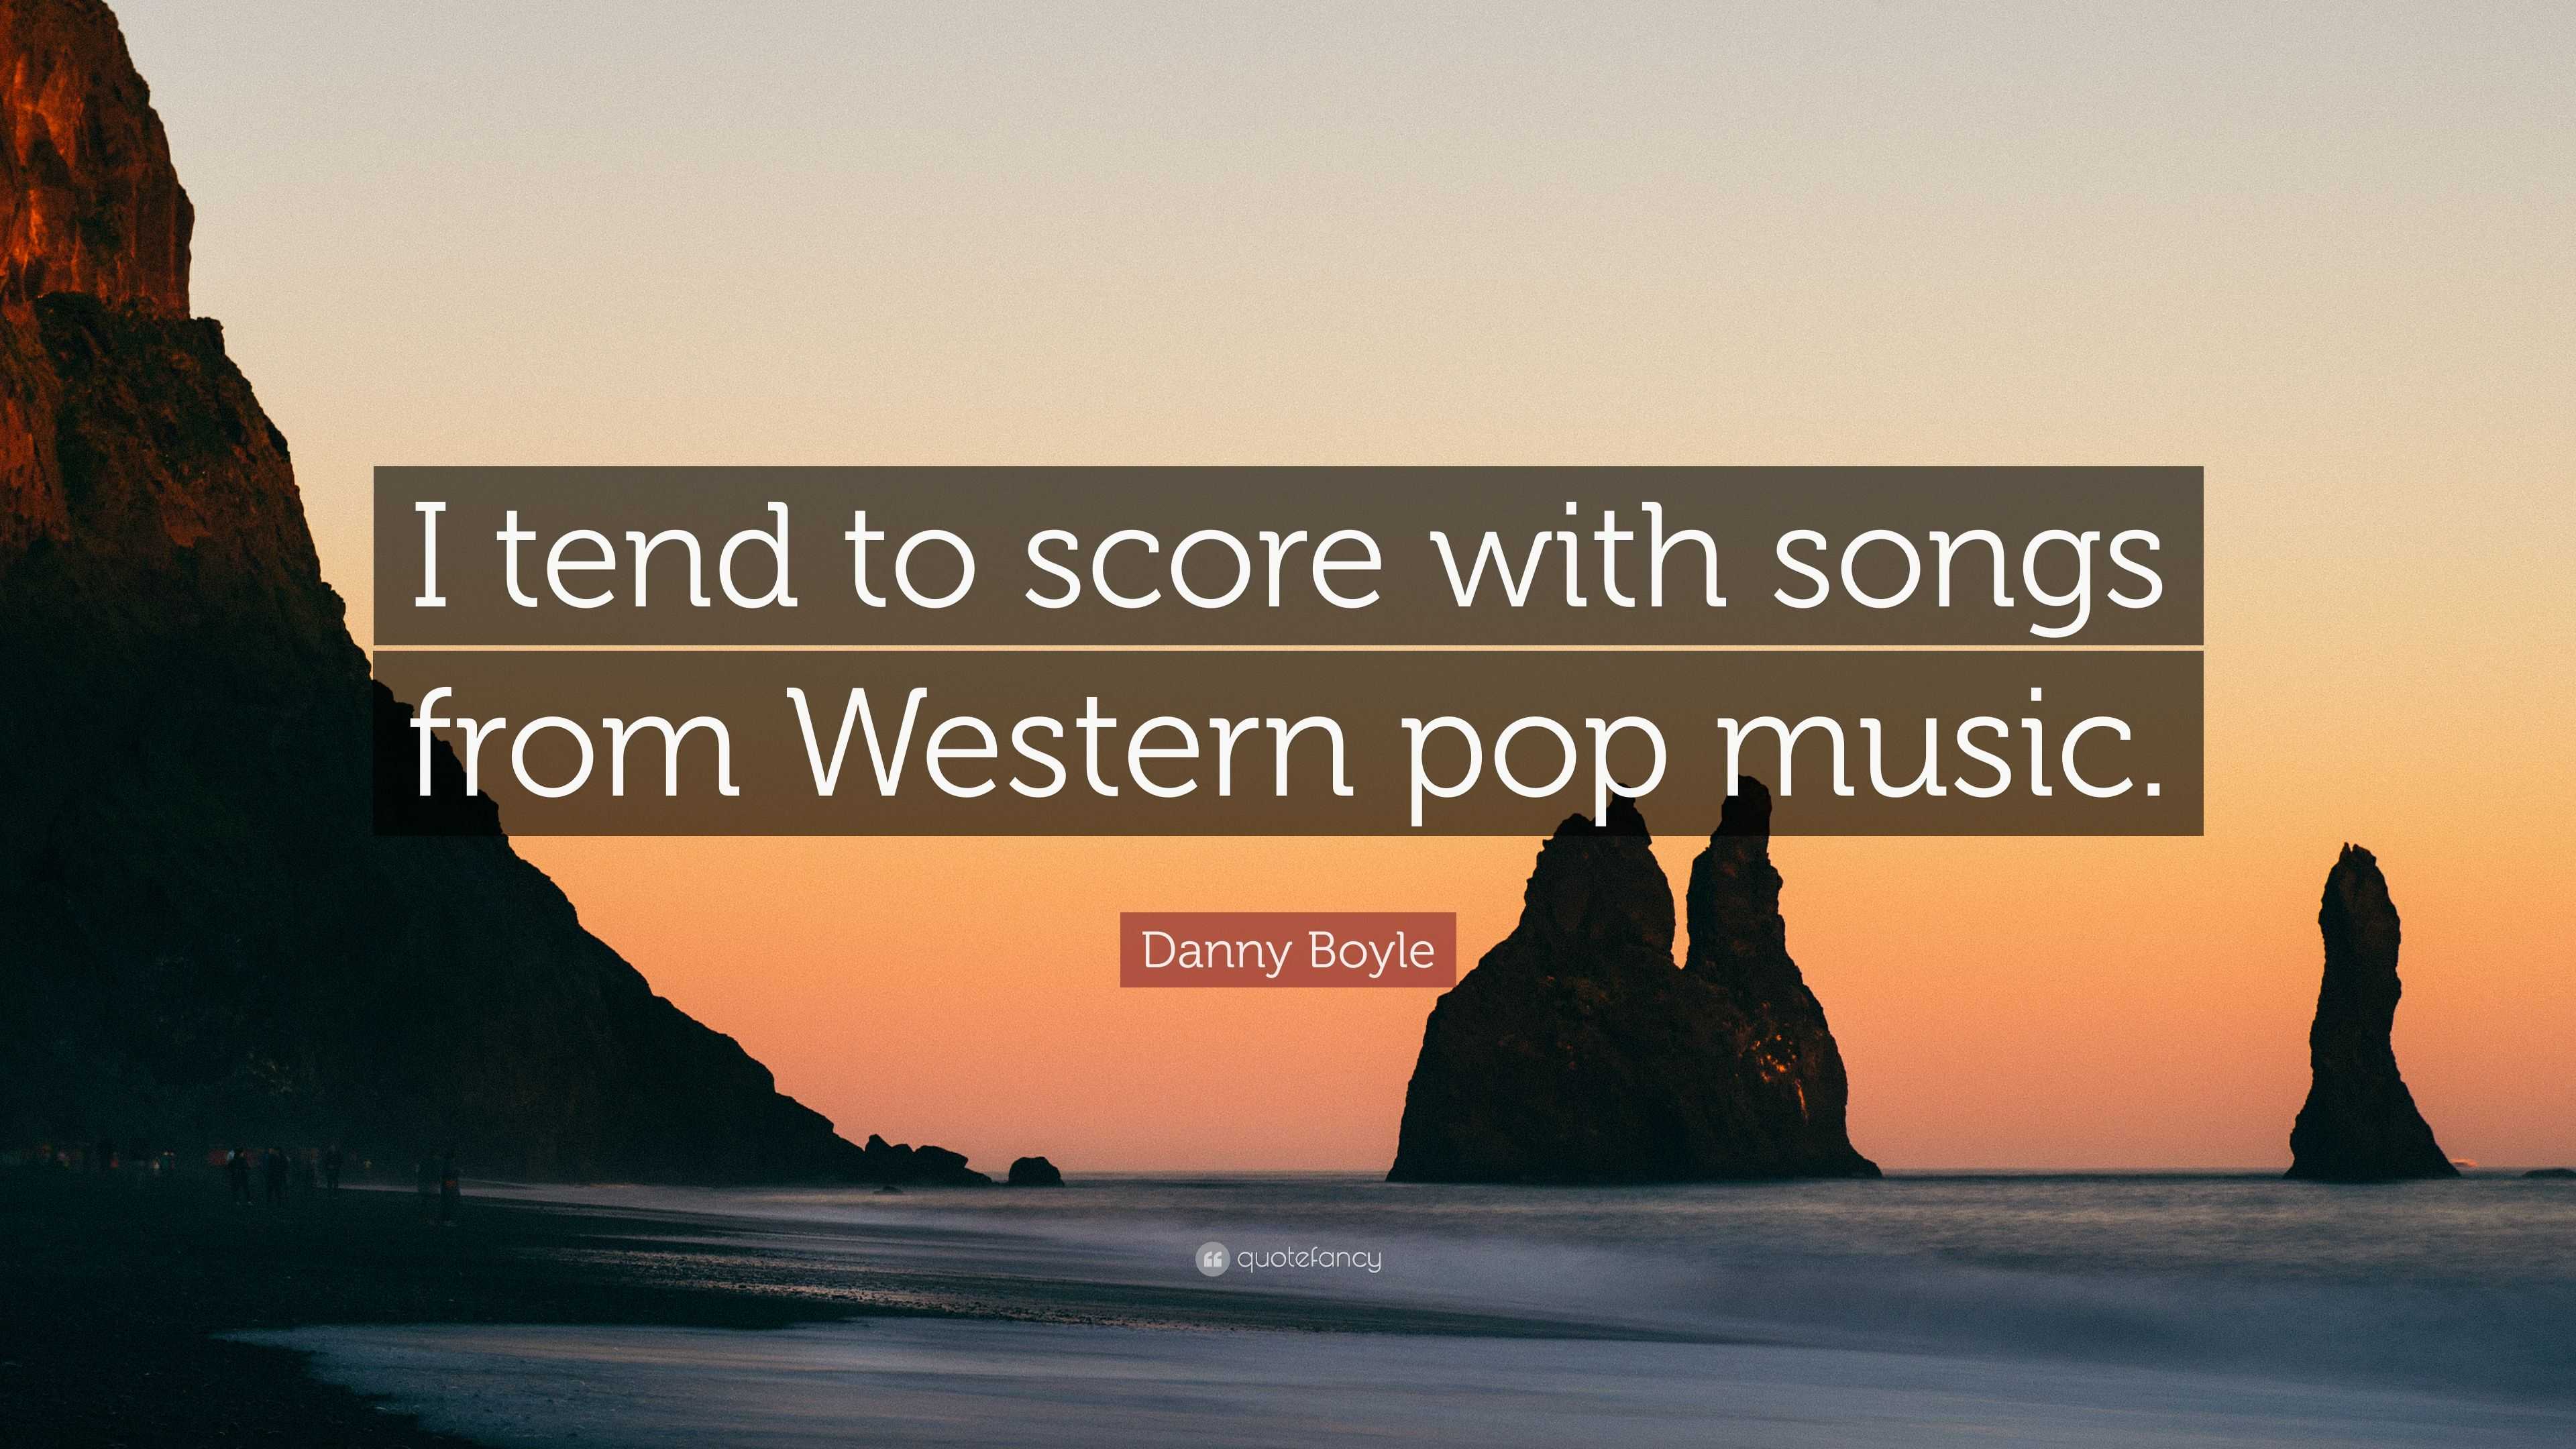 Hen zich zorgen maken Vaardigheid Danny Boyle Quote: “I tend to score with songs from Western pop music.”